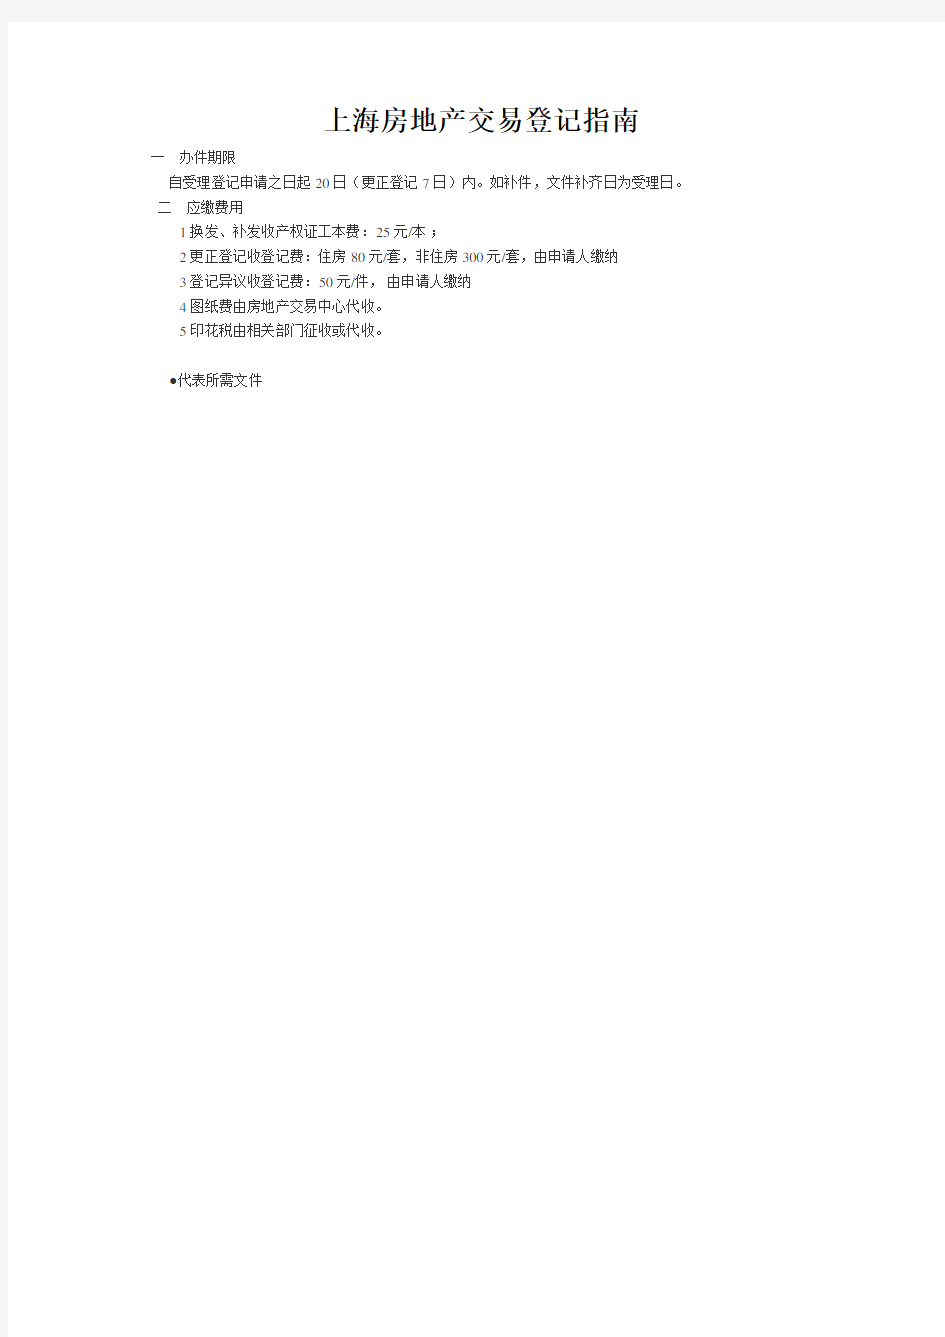 上海房地产交易登记指南